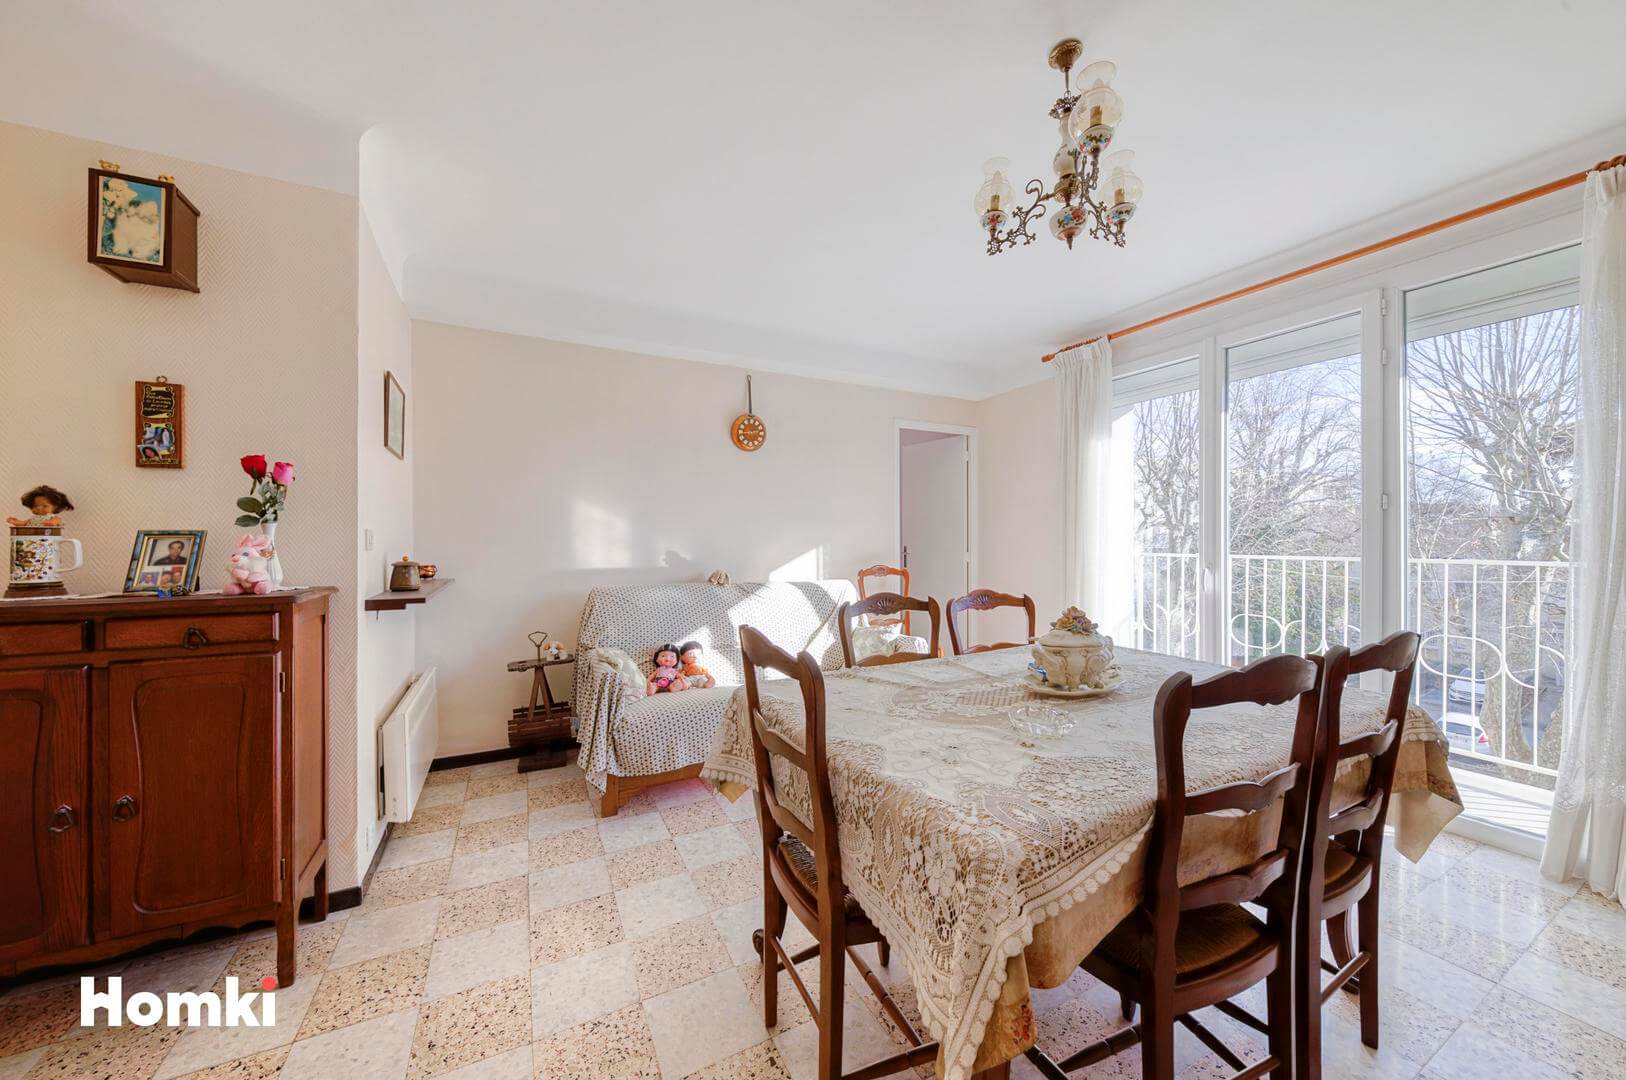 Homki - Vente Appartement  de 57.0 m² à Marignane 13700